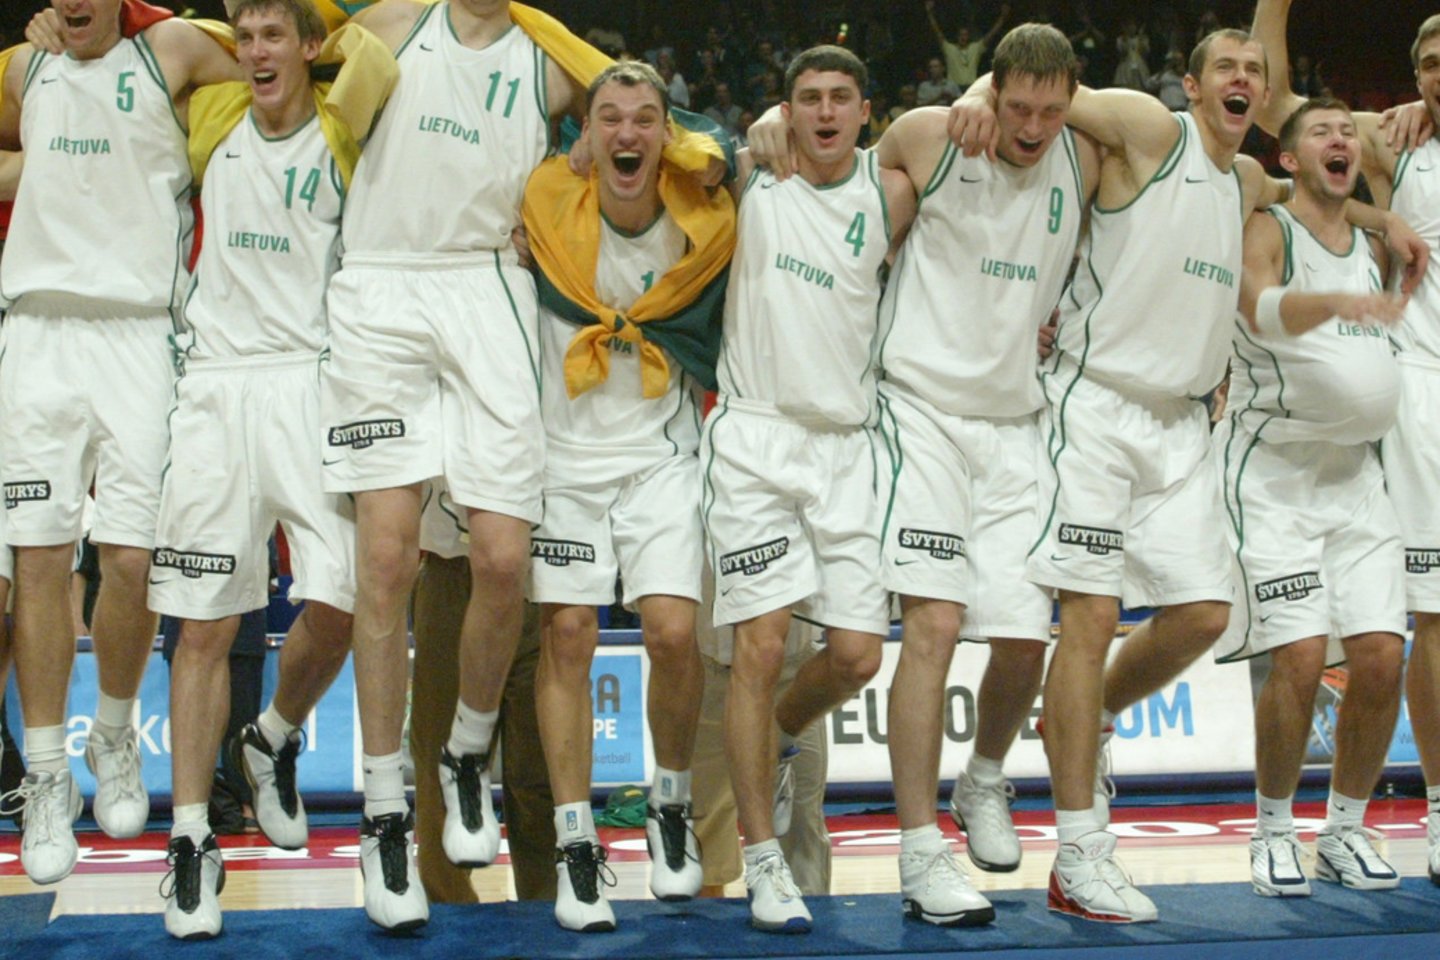 Š.Jasikevičius 2003 metais su Lietuvos rinktine laimėjo Europos čempionato auksą.<br>LR archyvo nuotr.